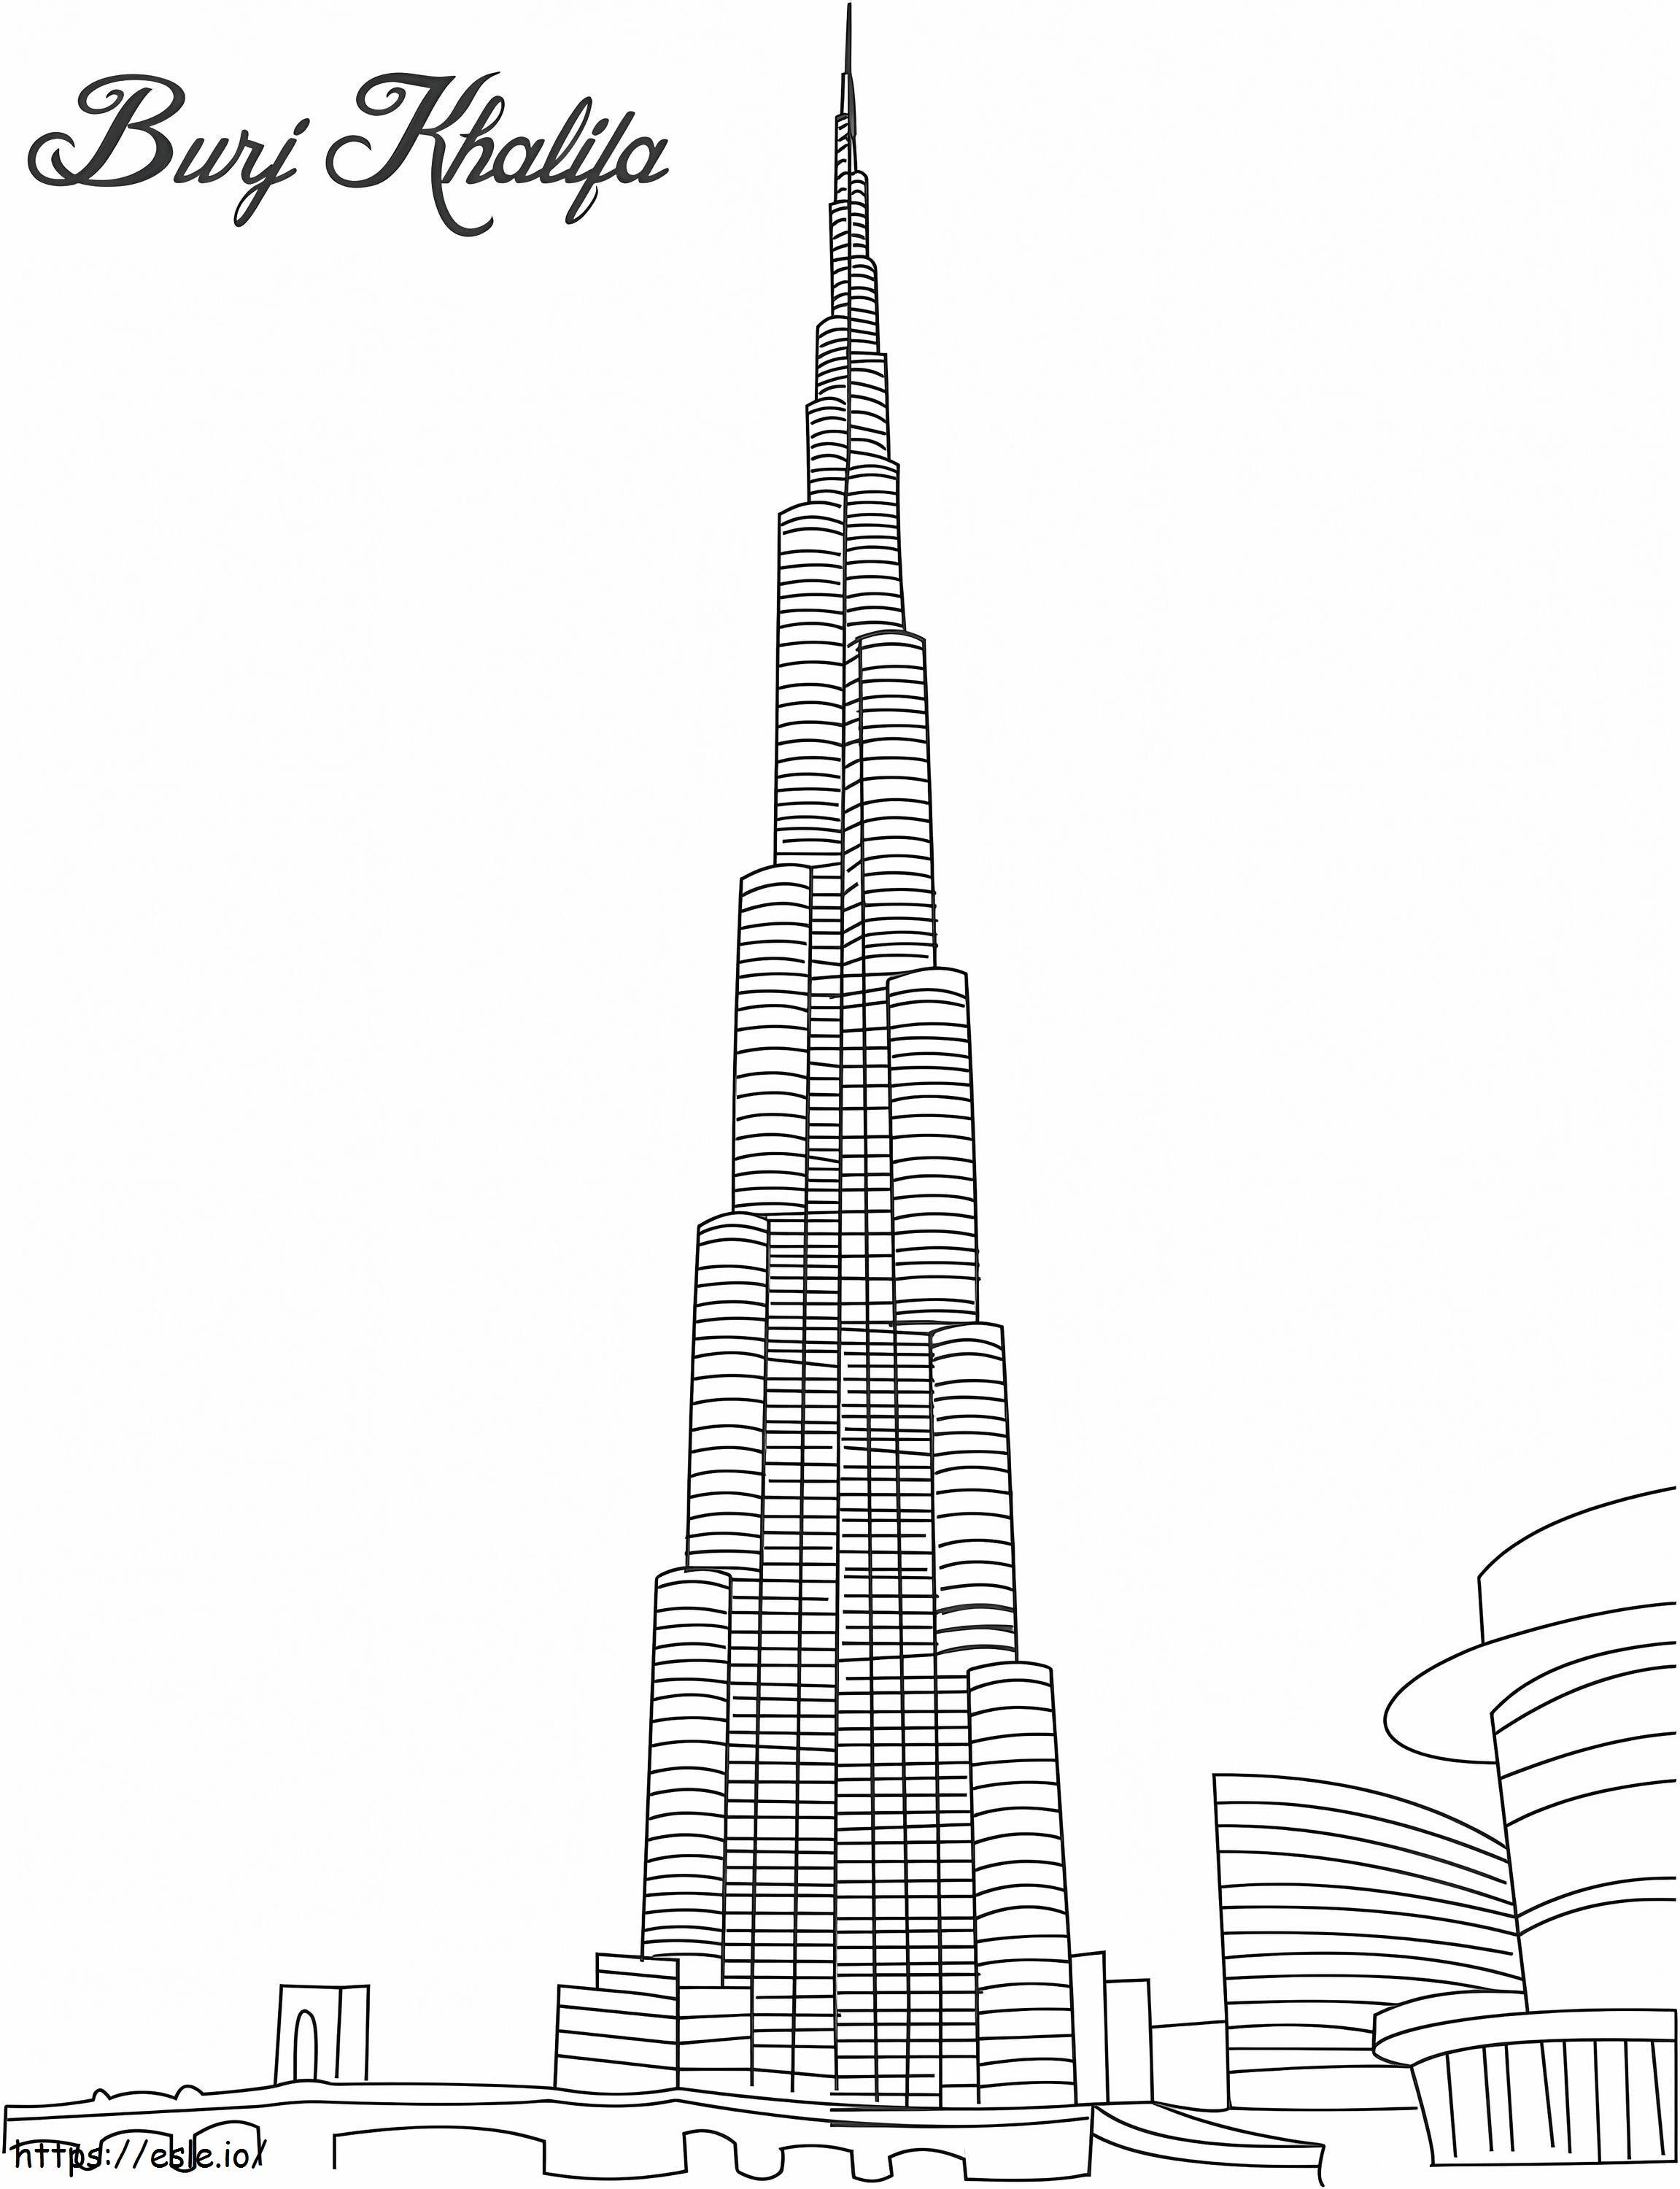 1526980175 3350 29310 Burj Khalifa Gambar Mewarnai